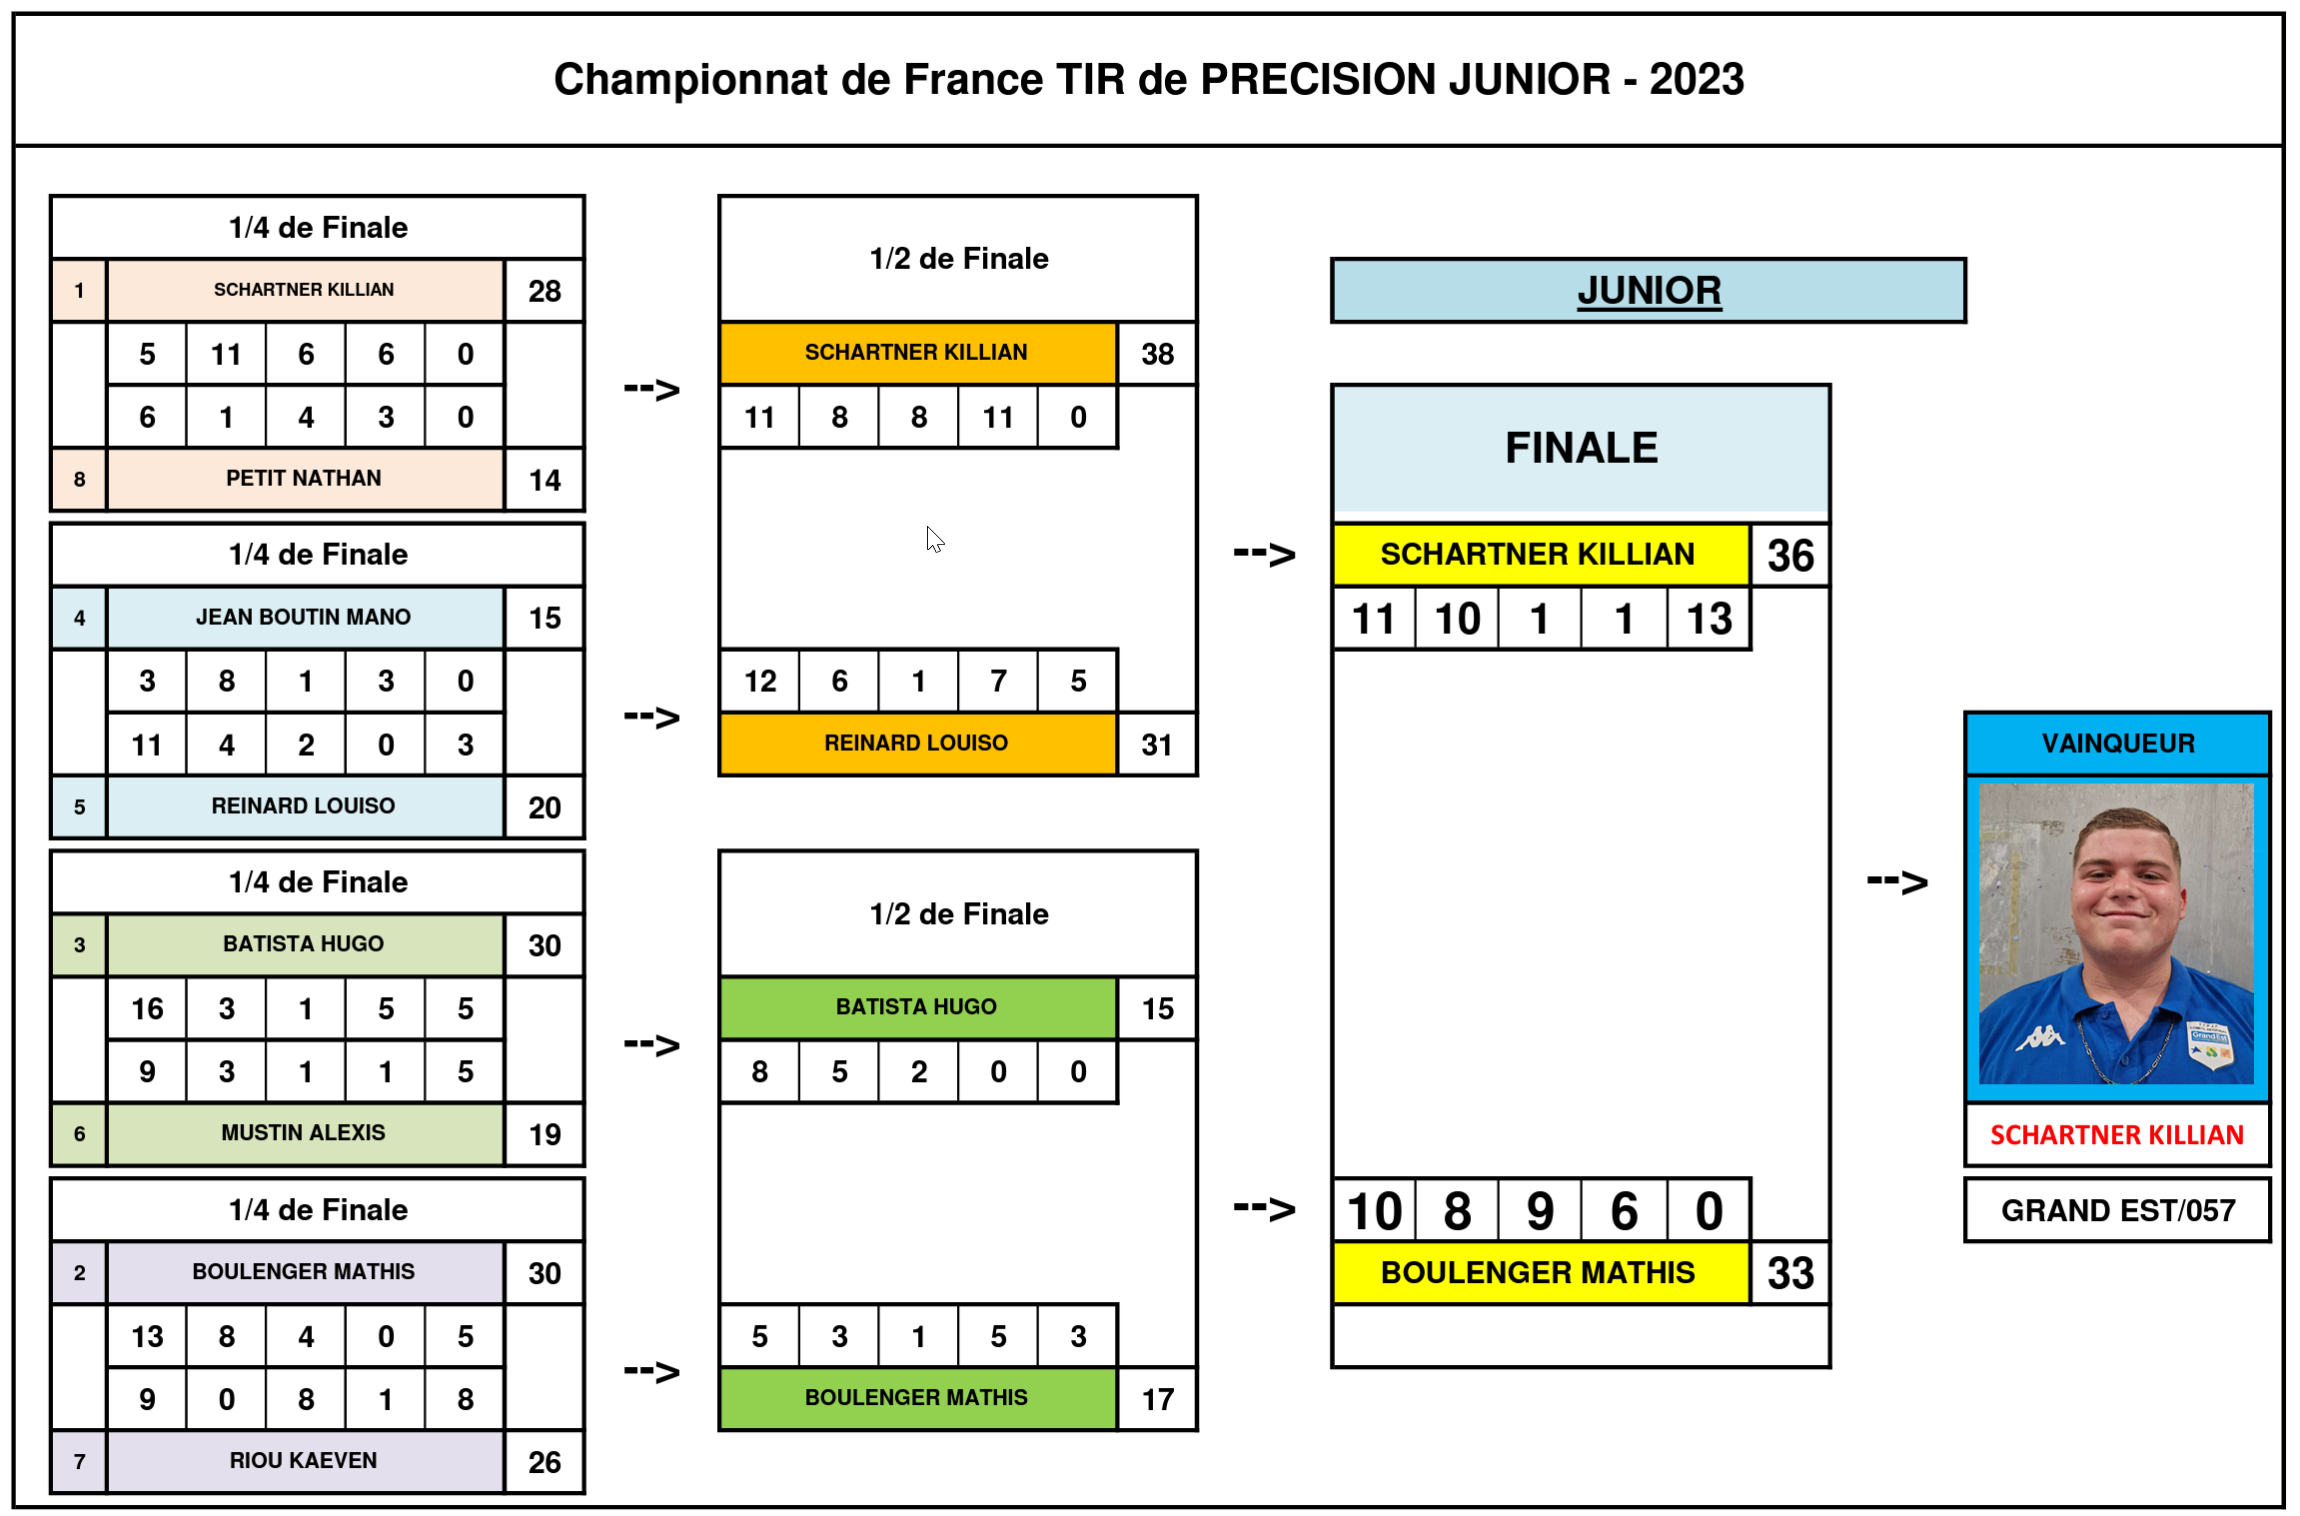 France TDPJ 2023 Finale